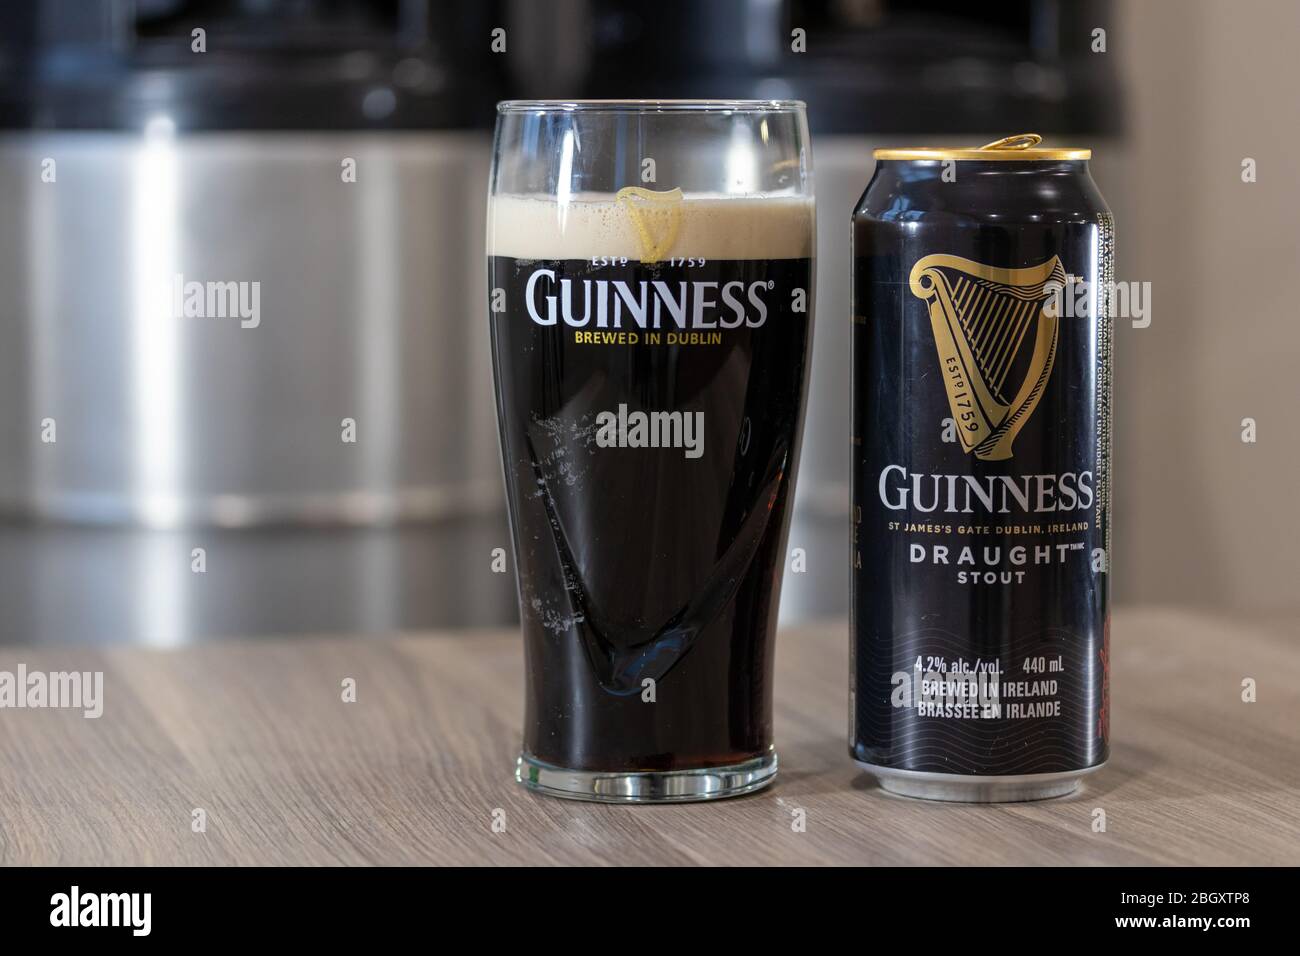 Guinness birra alla spina gallo su un tavolo accanto a un bicchiere pieno di birra in un bicchiere Guinness con fusti impilati sullo sfondo. Foto Stock